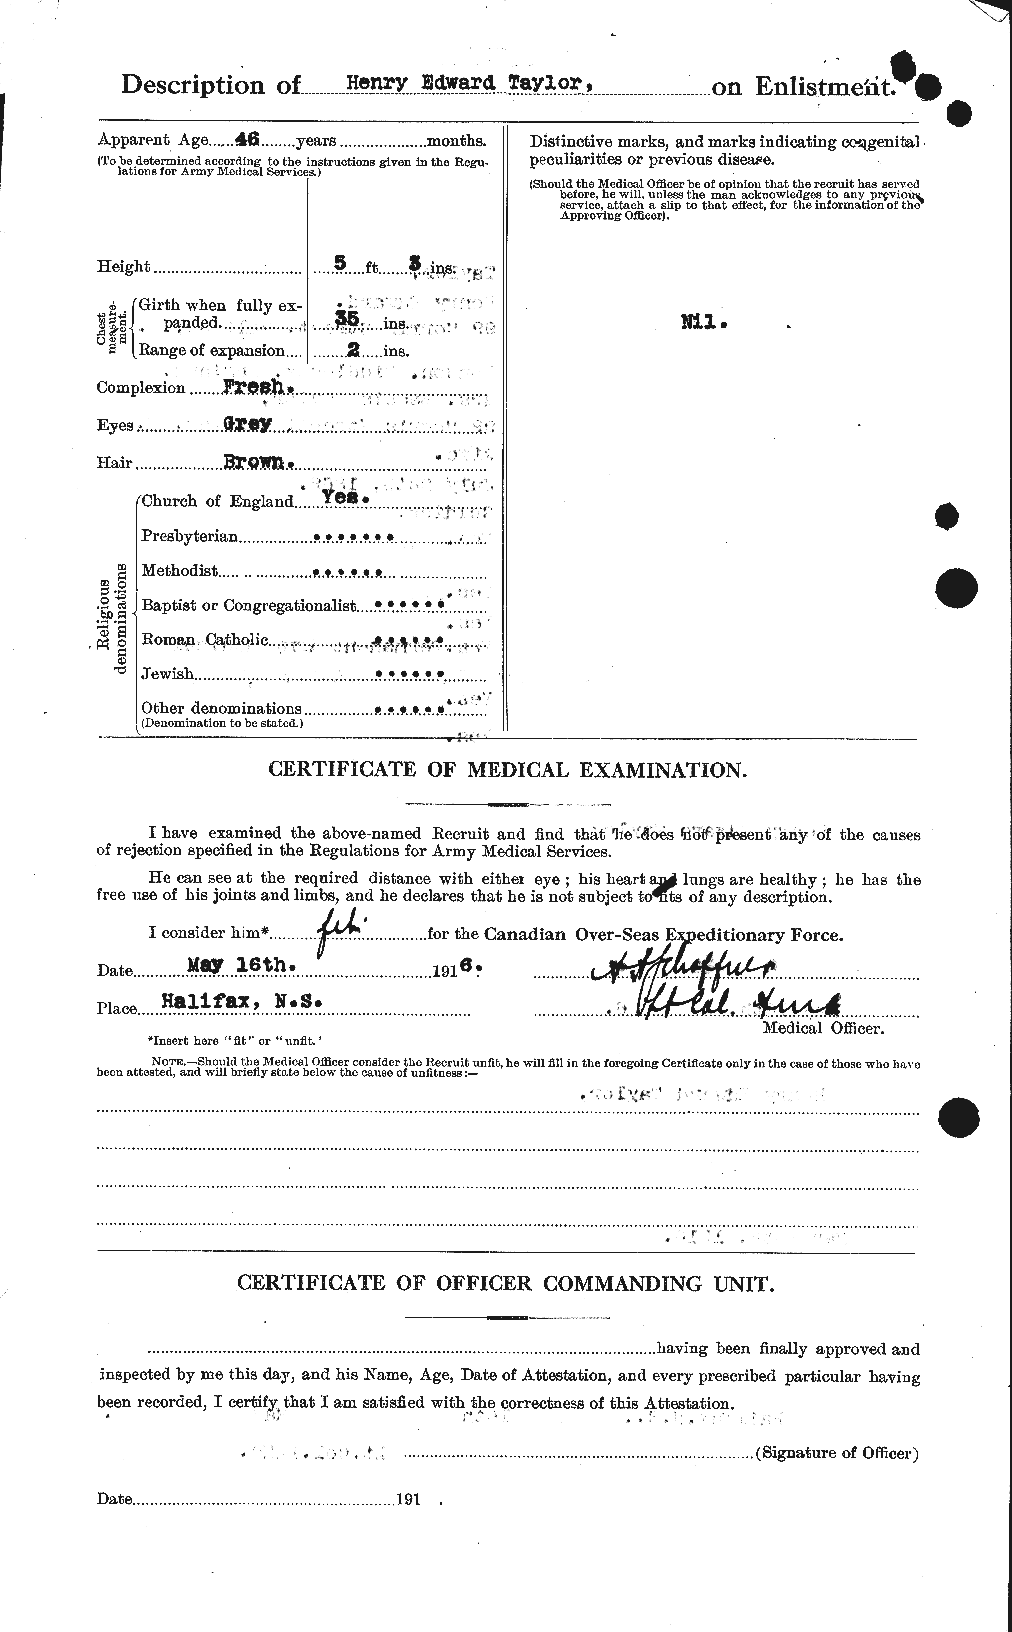 Dossiers du Personnel de la Première Guerre mondiale - CEC 626535b